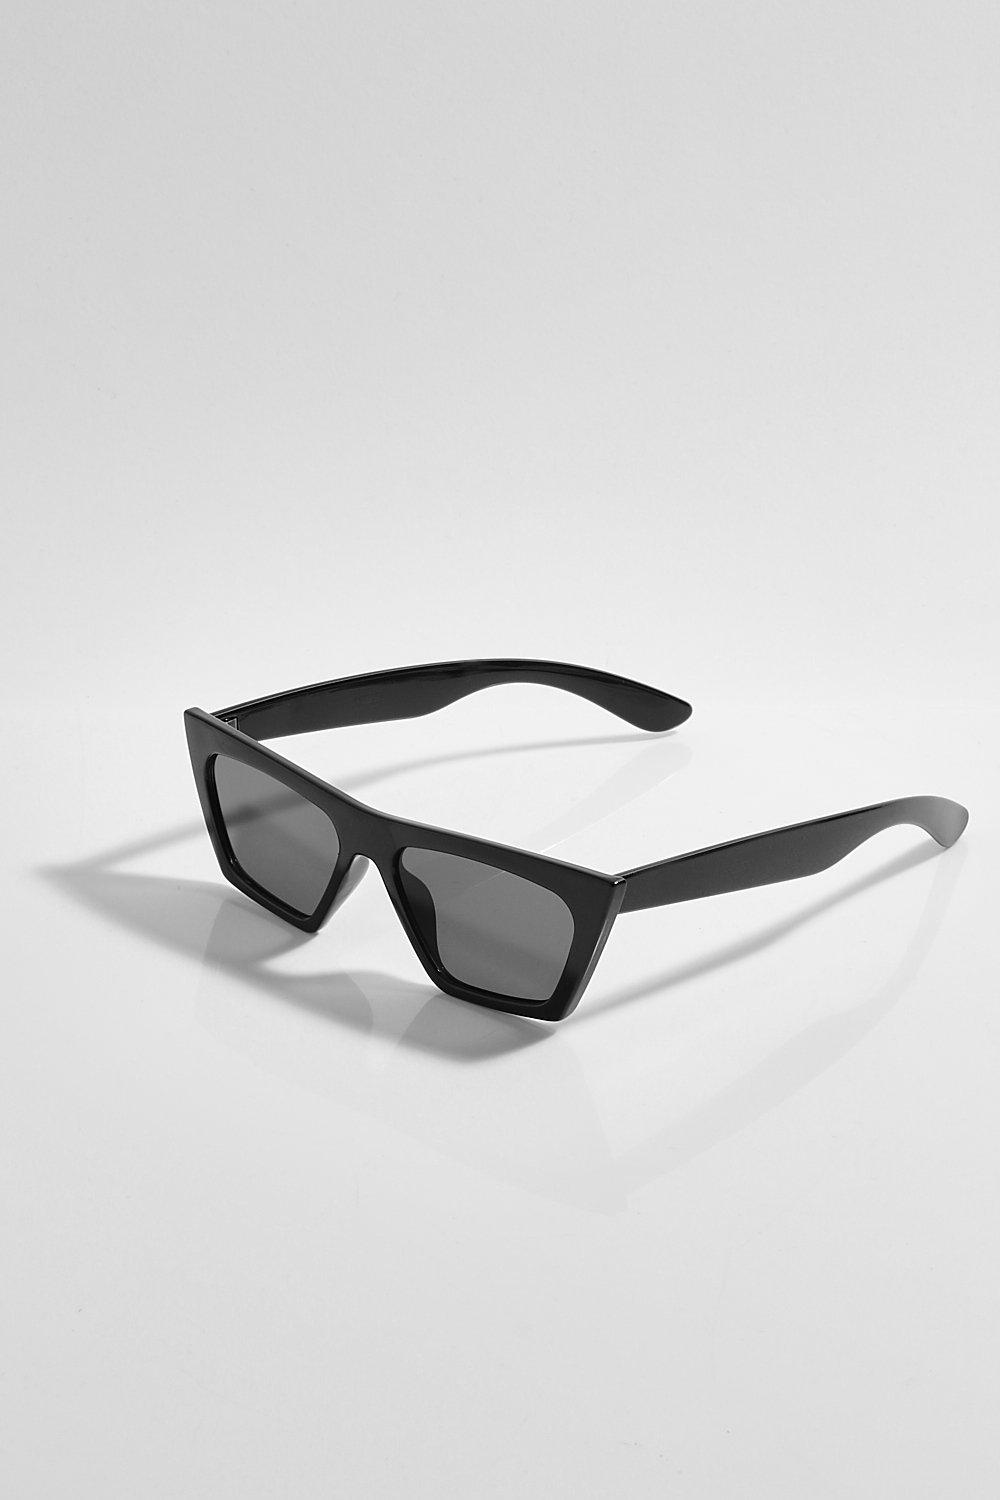 Gafas de sol estilo ojos de gato cuadradas completamente negras